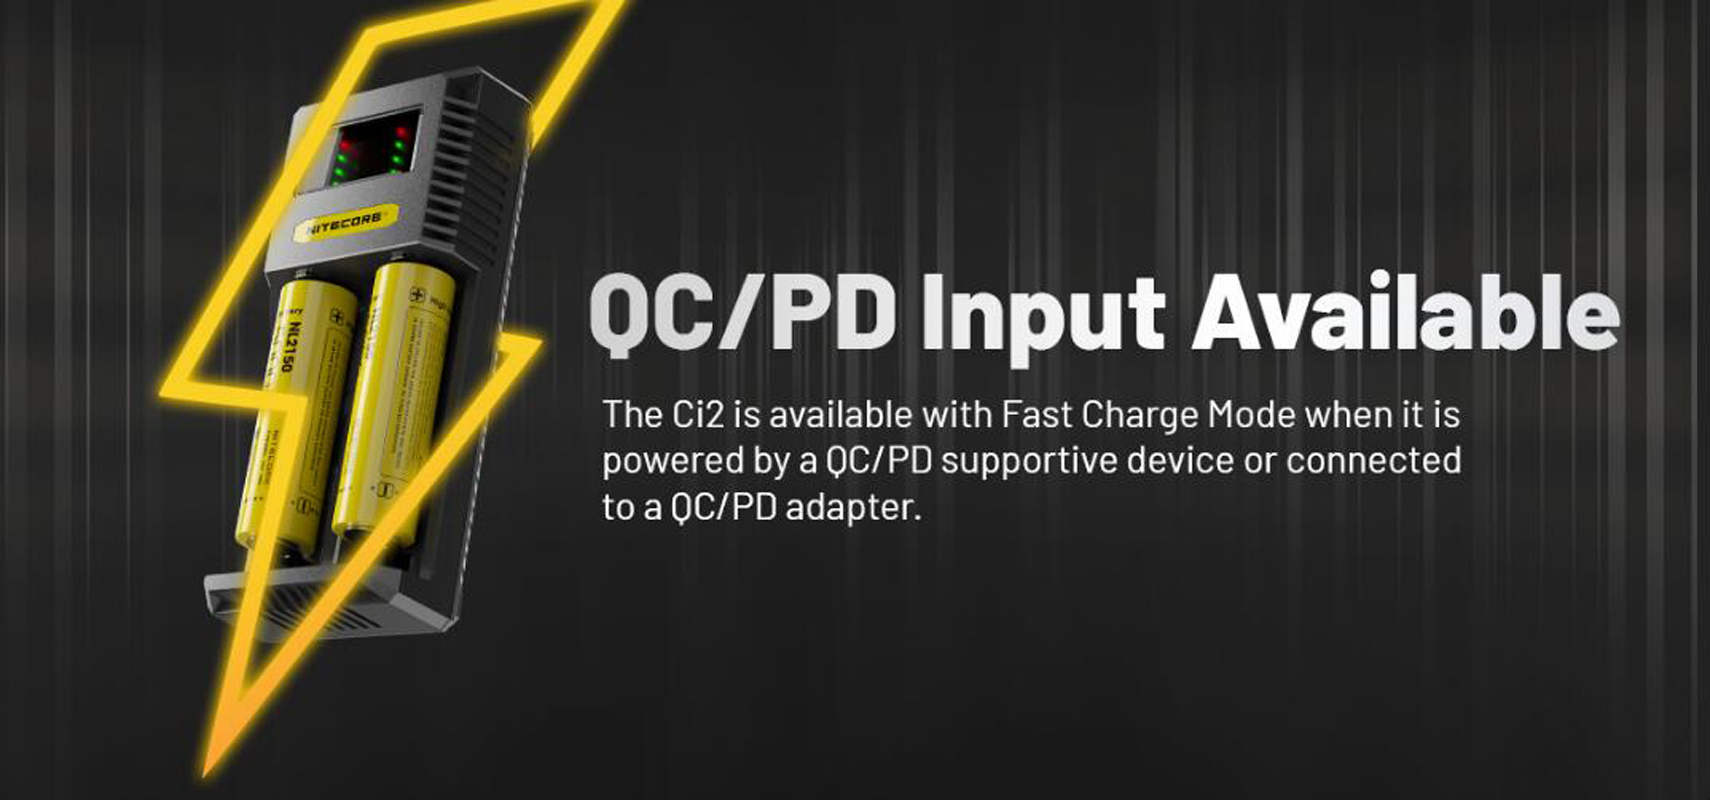 Аутентичный Nitecore CI2 QC Charger Digicharger ЖК-дисплей быстрый интеллектуальный двойной 2-слот PD USB-C Зарядка для IMR 18650 21700 Универсальная литий-ионная батарея против UI2 D2 SC2 I2